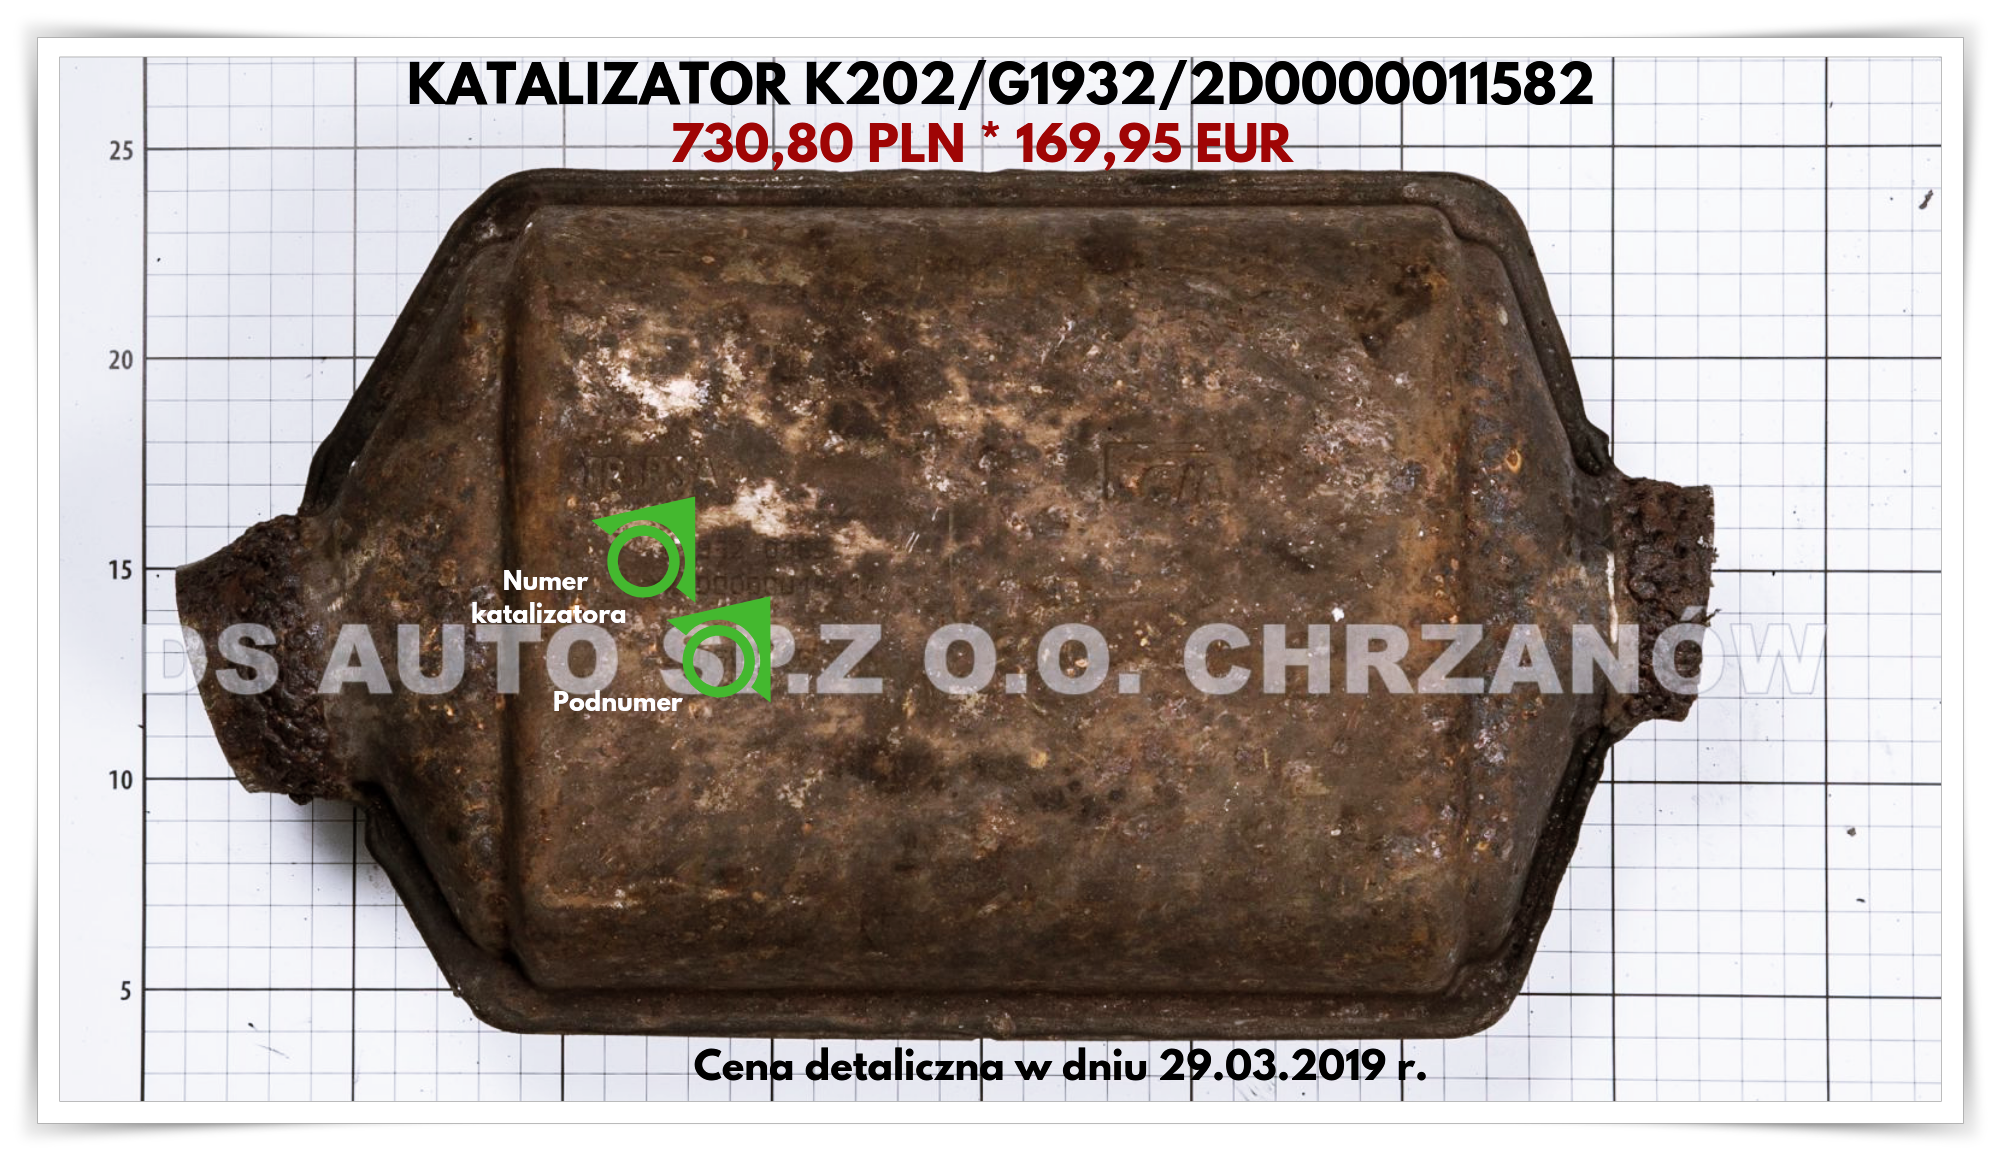 Catalyst K202 - Katalizatory Chrzanów